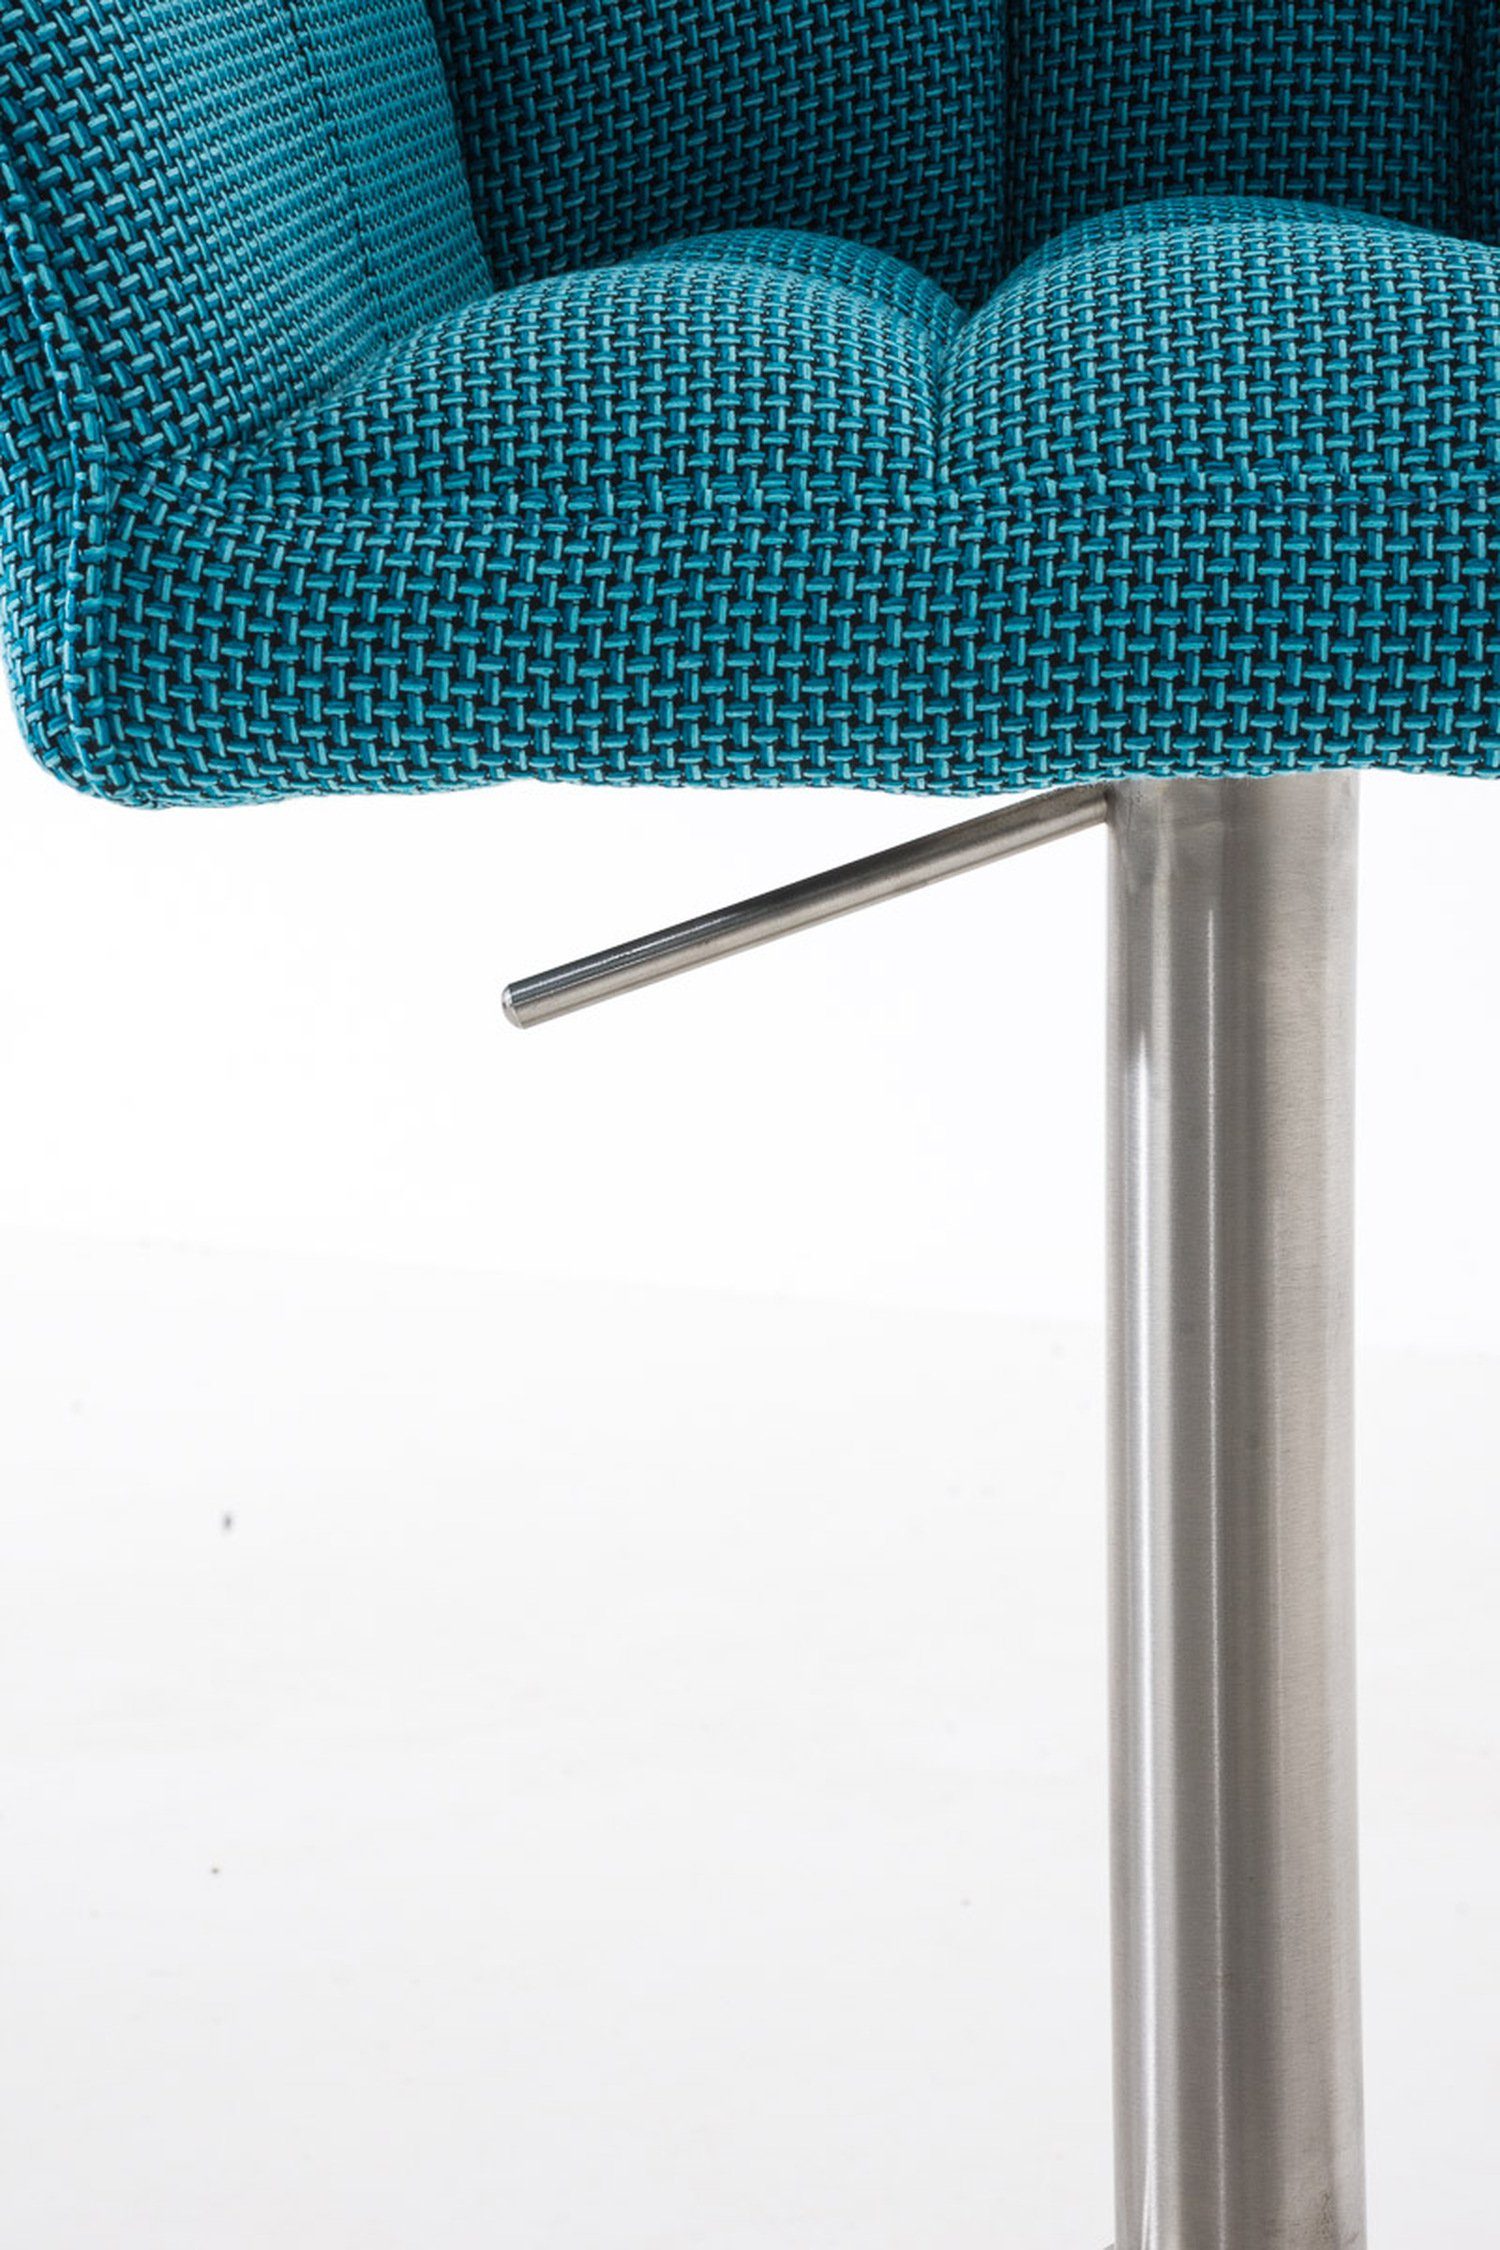 Türkis Stoff - Sitzfläche: Hocker Gestell drehbar für & Edelstahl Theke TPFLiving Damaso Fußstütze und Rückenlehne - (mit 360° Küche), - Barhocker